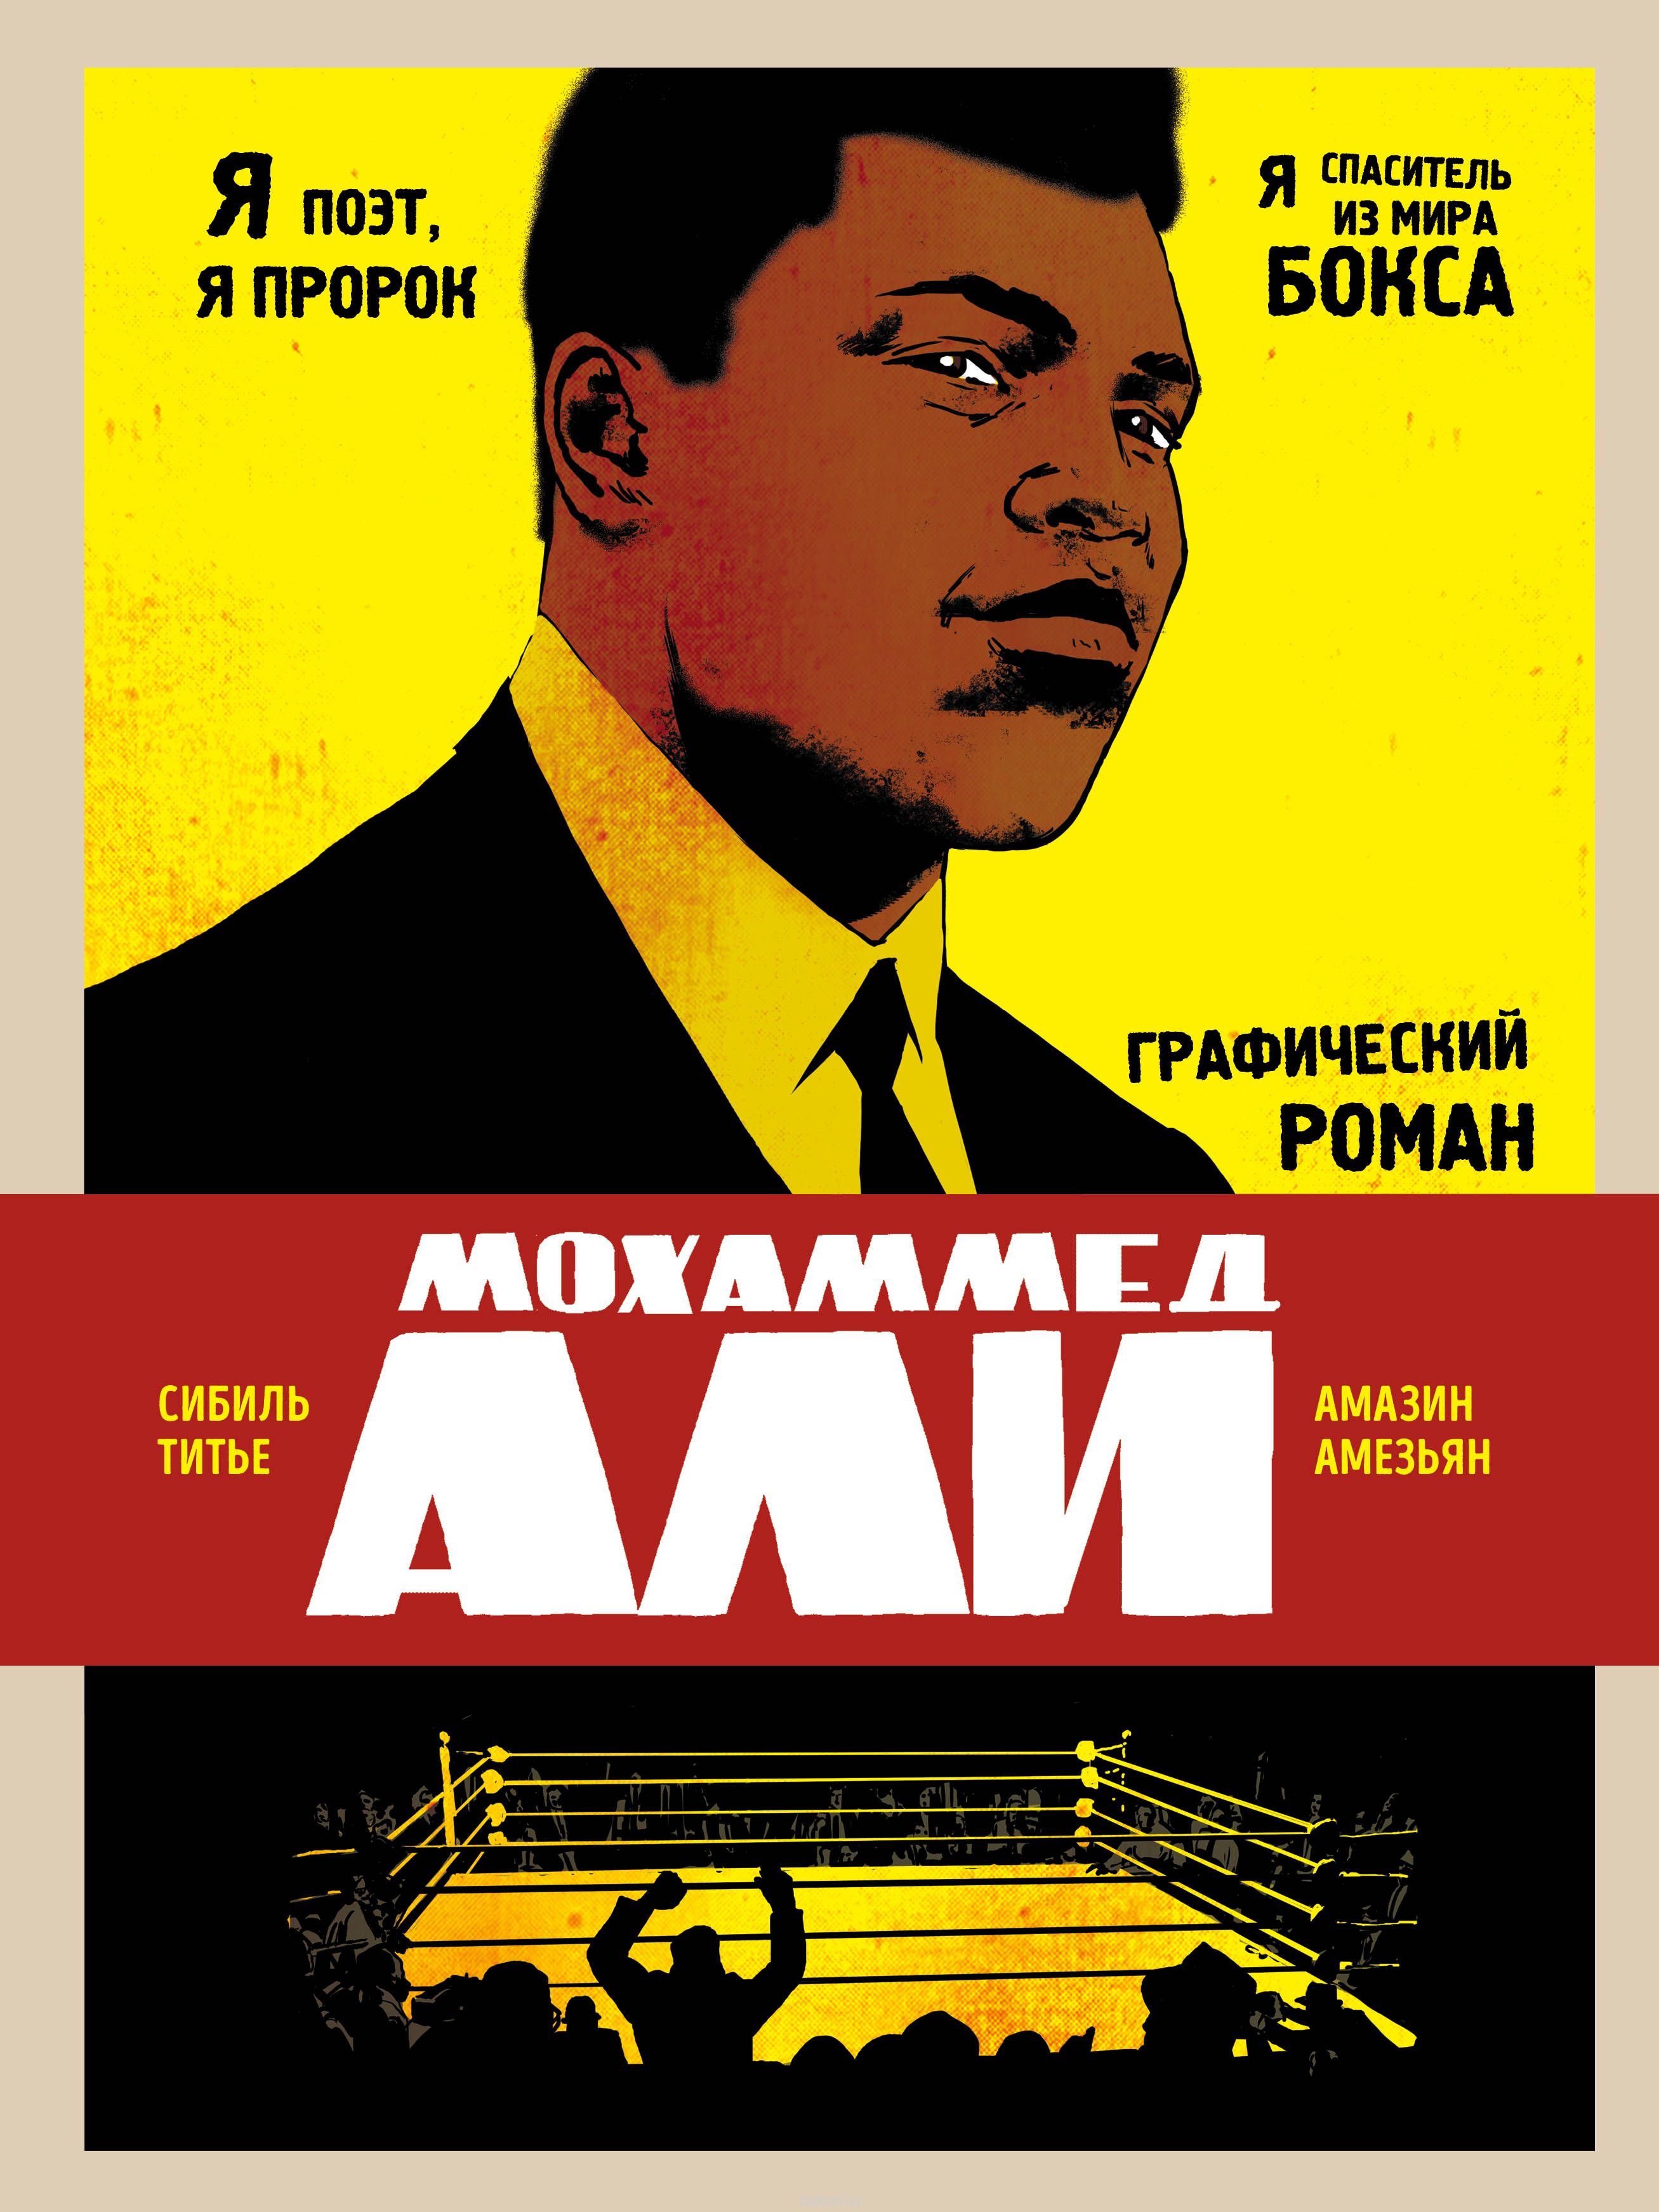 Комикс на русском языке «Мохаммед Али. Графический роман»